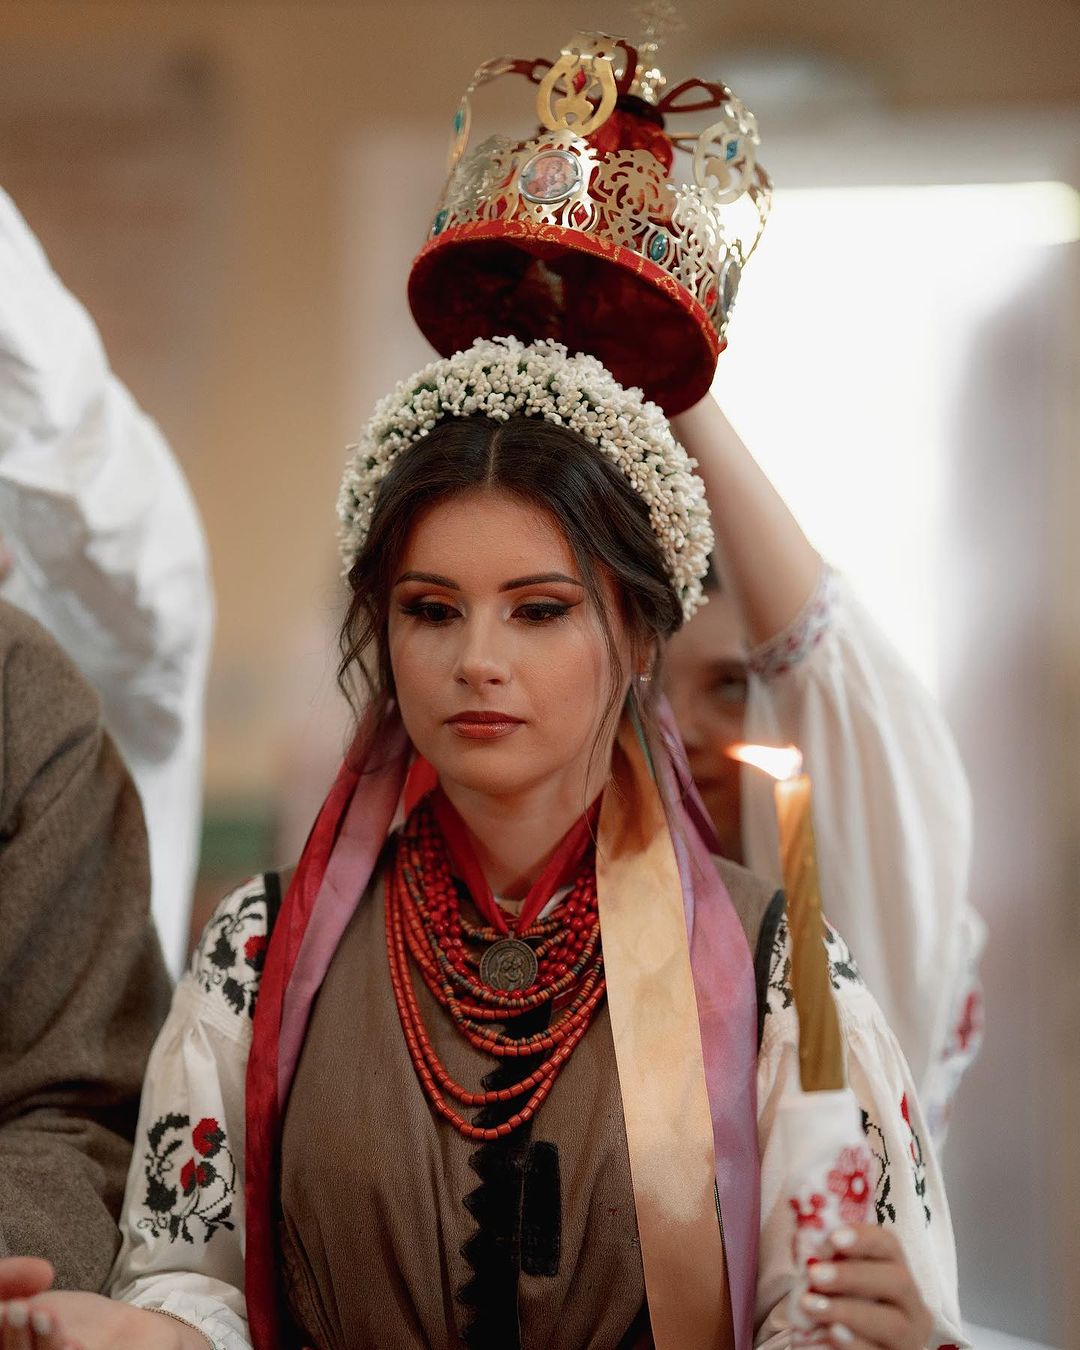 віталій дужик сопілкар Kalush Orchestra одружився весілля в українському стилі весільний автентичний одяг